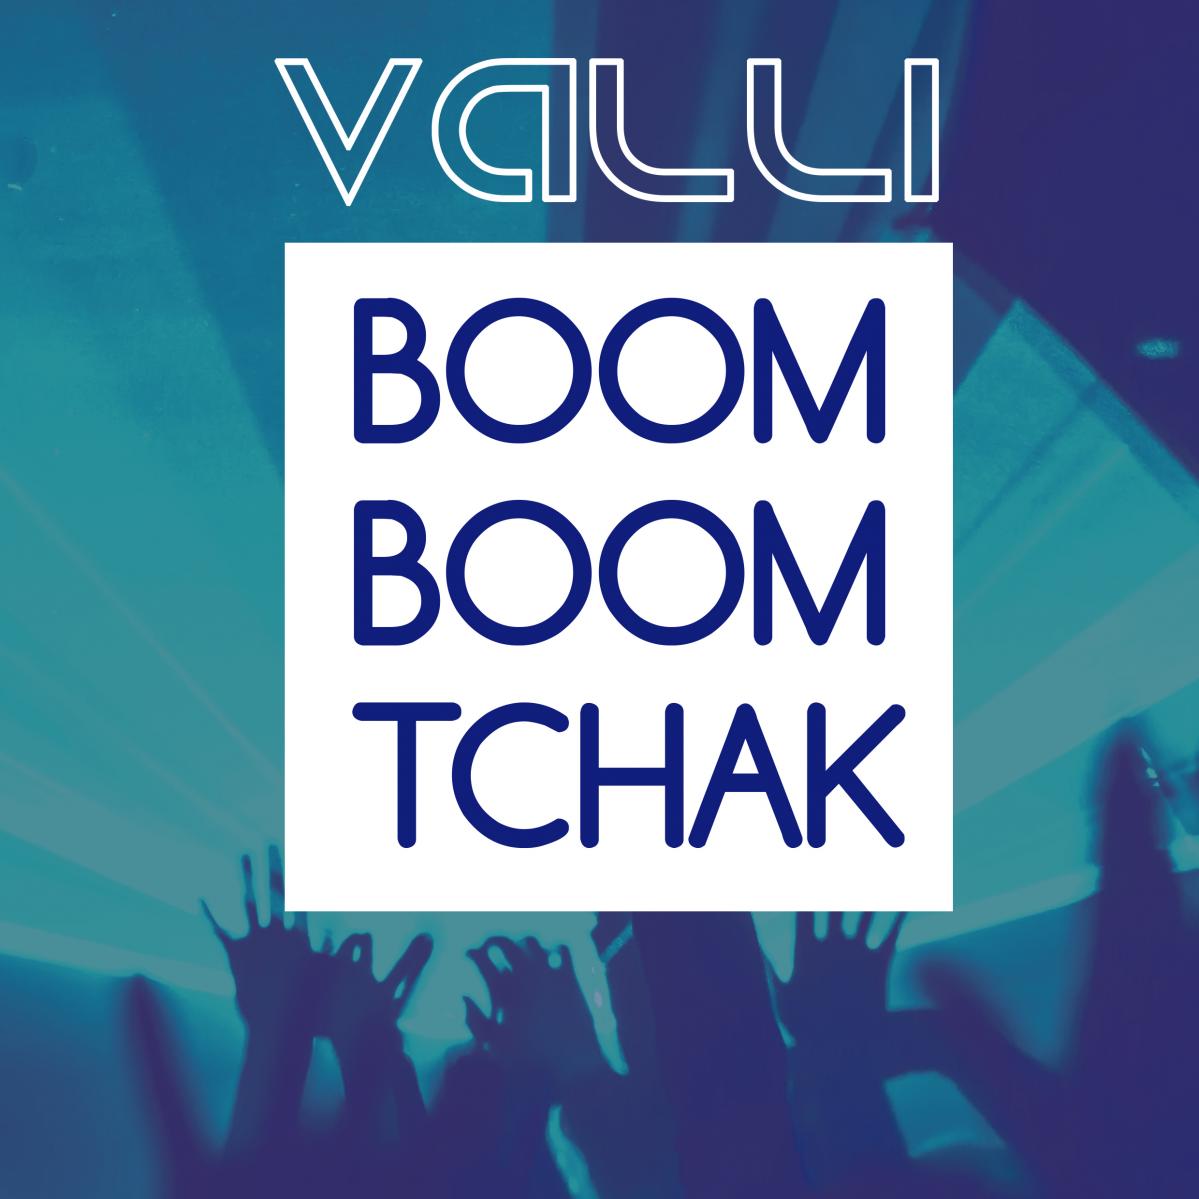 Valli-Boom-Boom-Tchak-web.jpg